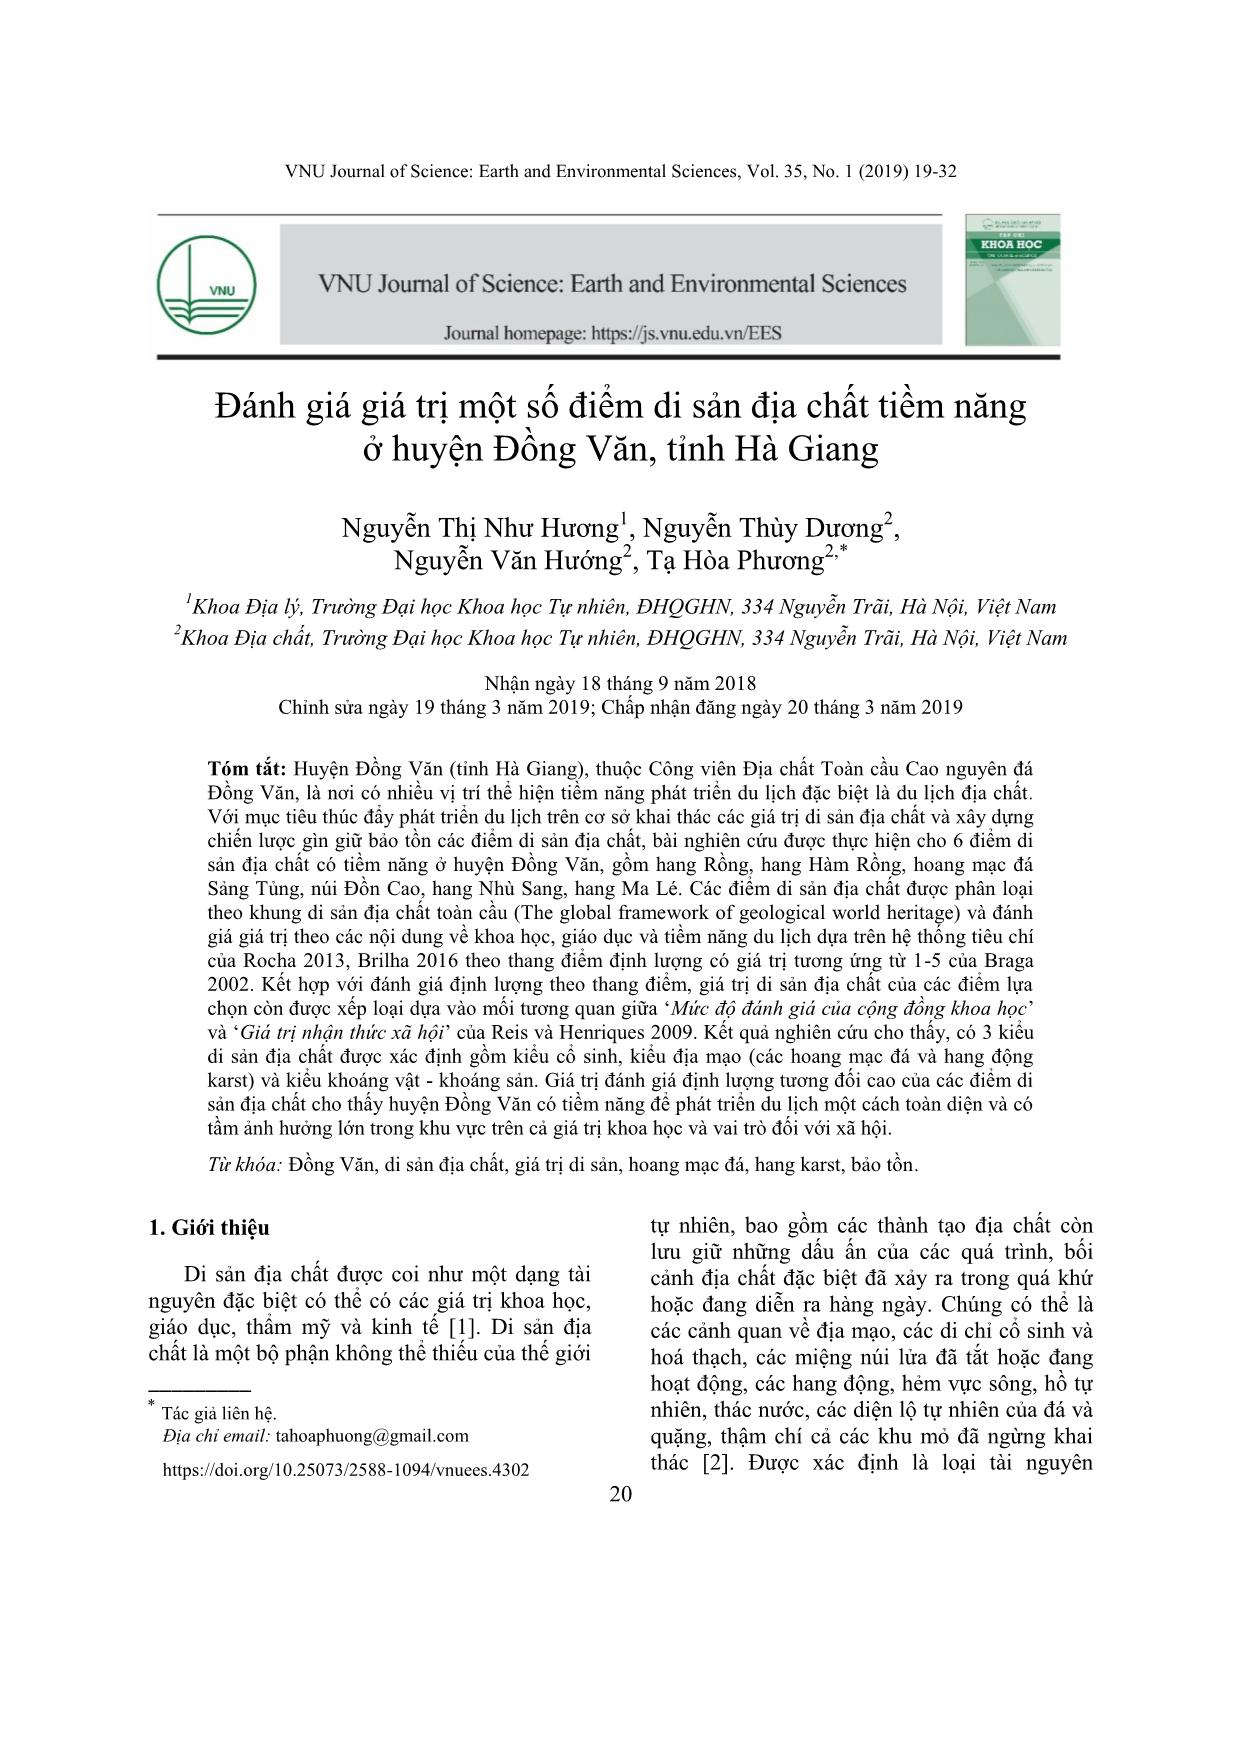 Đánh giá giá trị một số điểm di sản địa chất tiềm năng ở huyện Đồng Văn, tỉnh Hà Giang trang 2